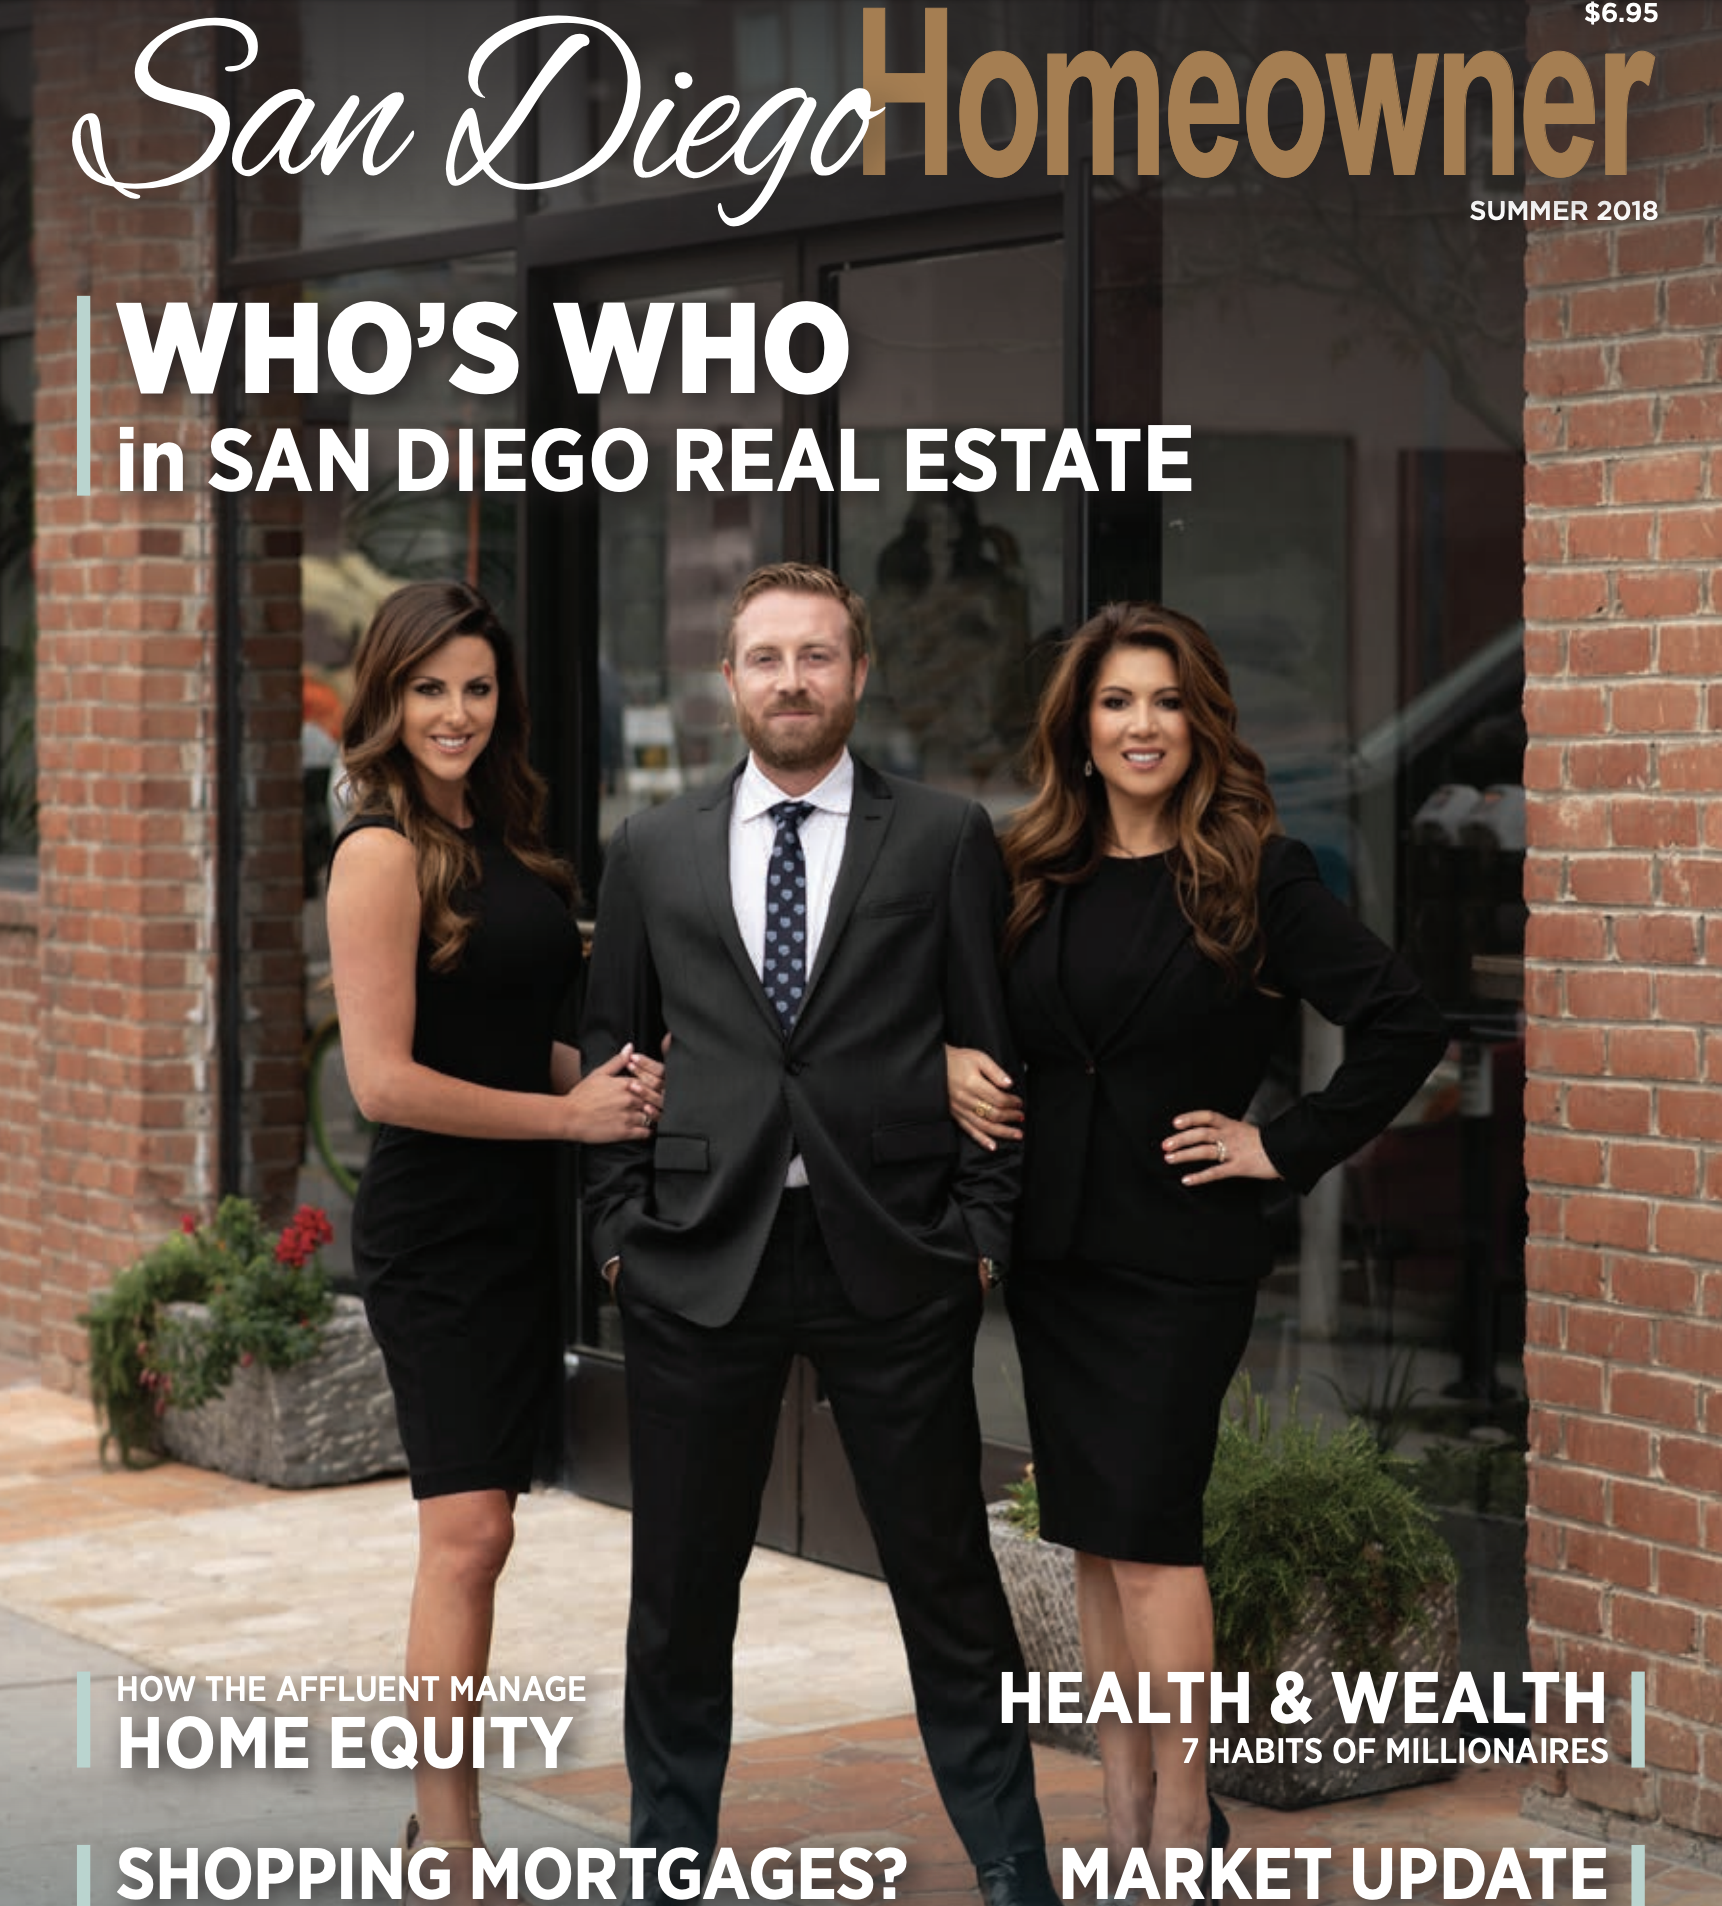 San Diego Homeowner Magazine June 2018